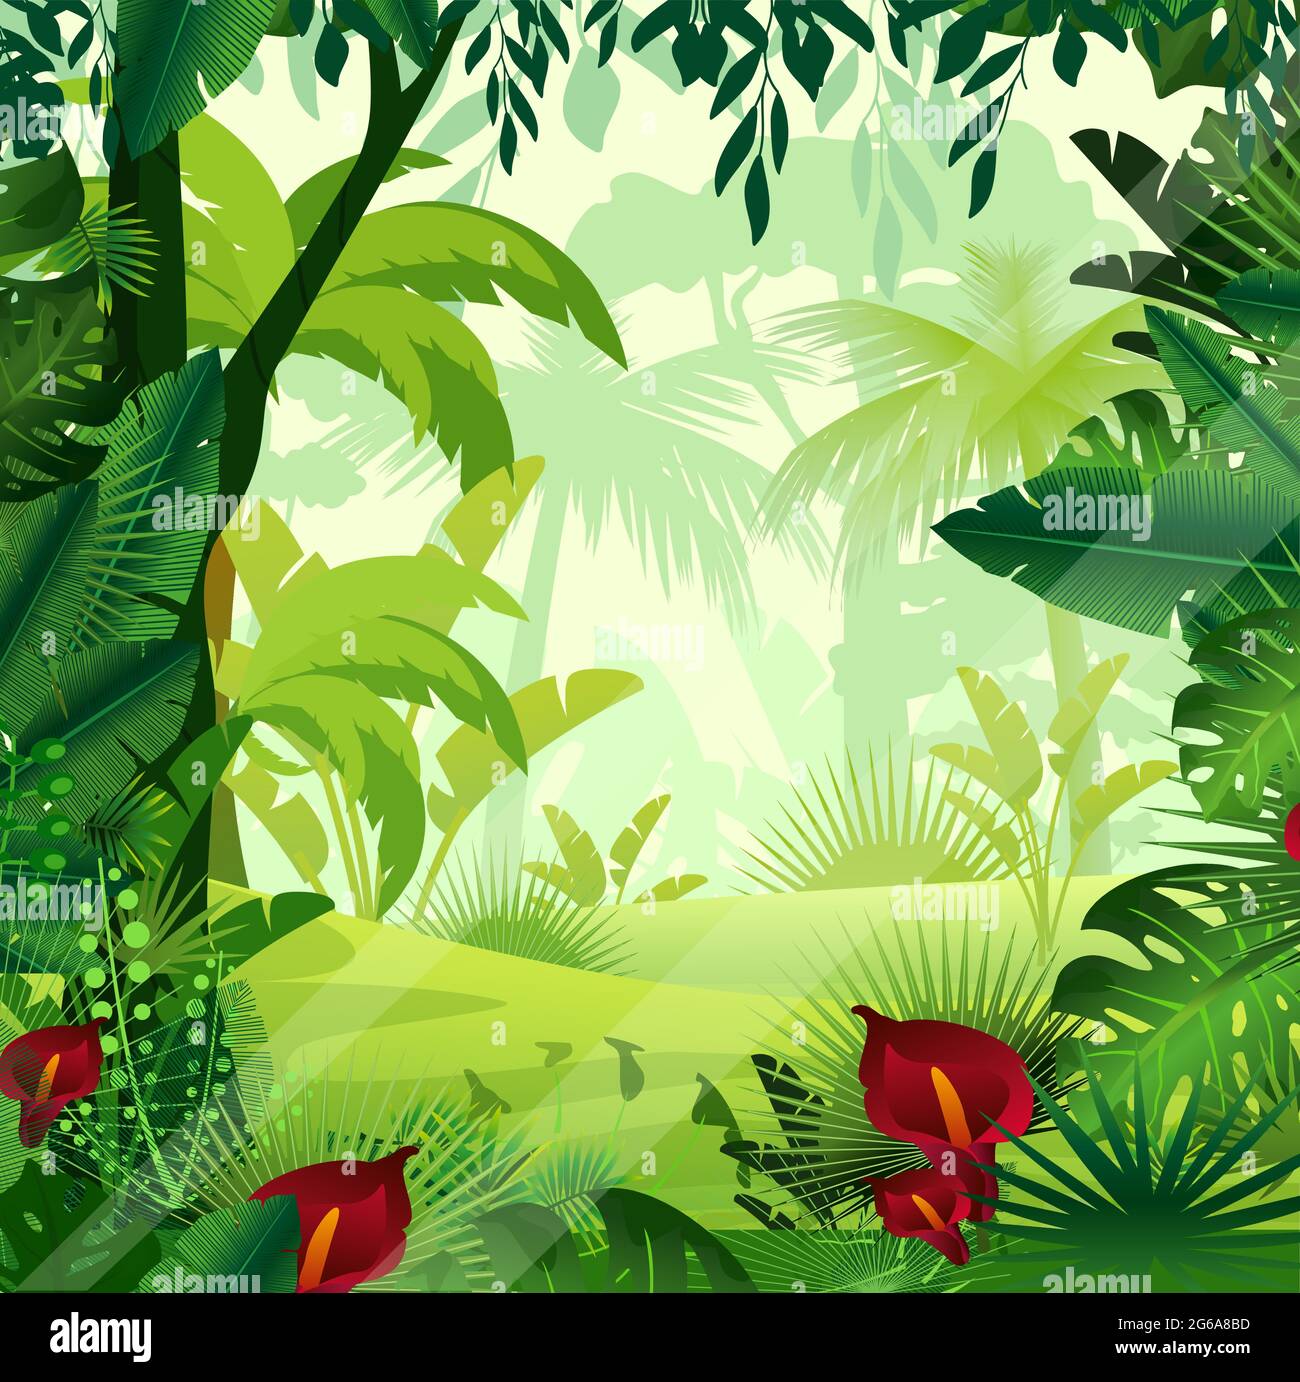 Illustration vectorielle de la pelouse de fond de la jungle le matin. Jungle colorée et lumineuse avec fougères, arbres, buissons, vignes et fleurs dans un style de dessin animé. Illustration de Vecteur